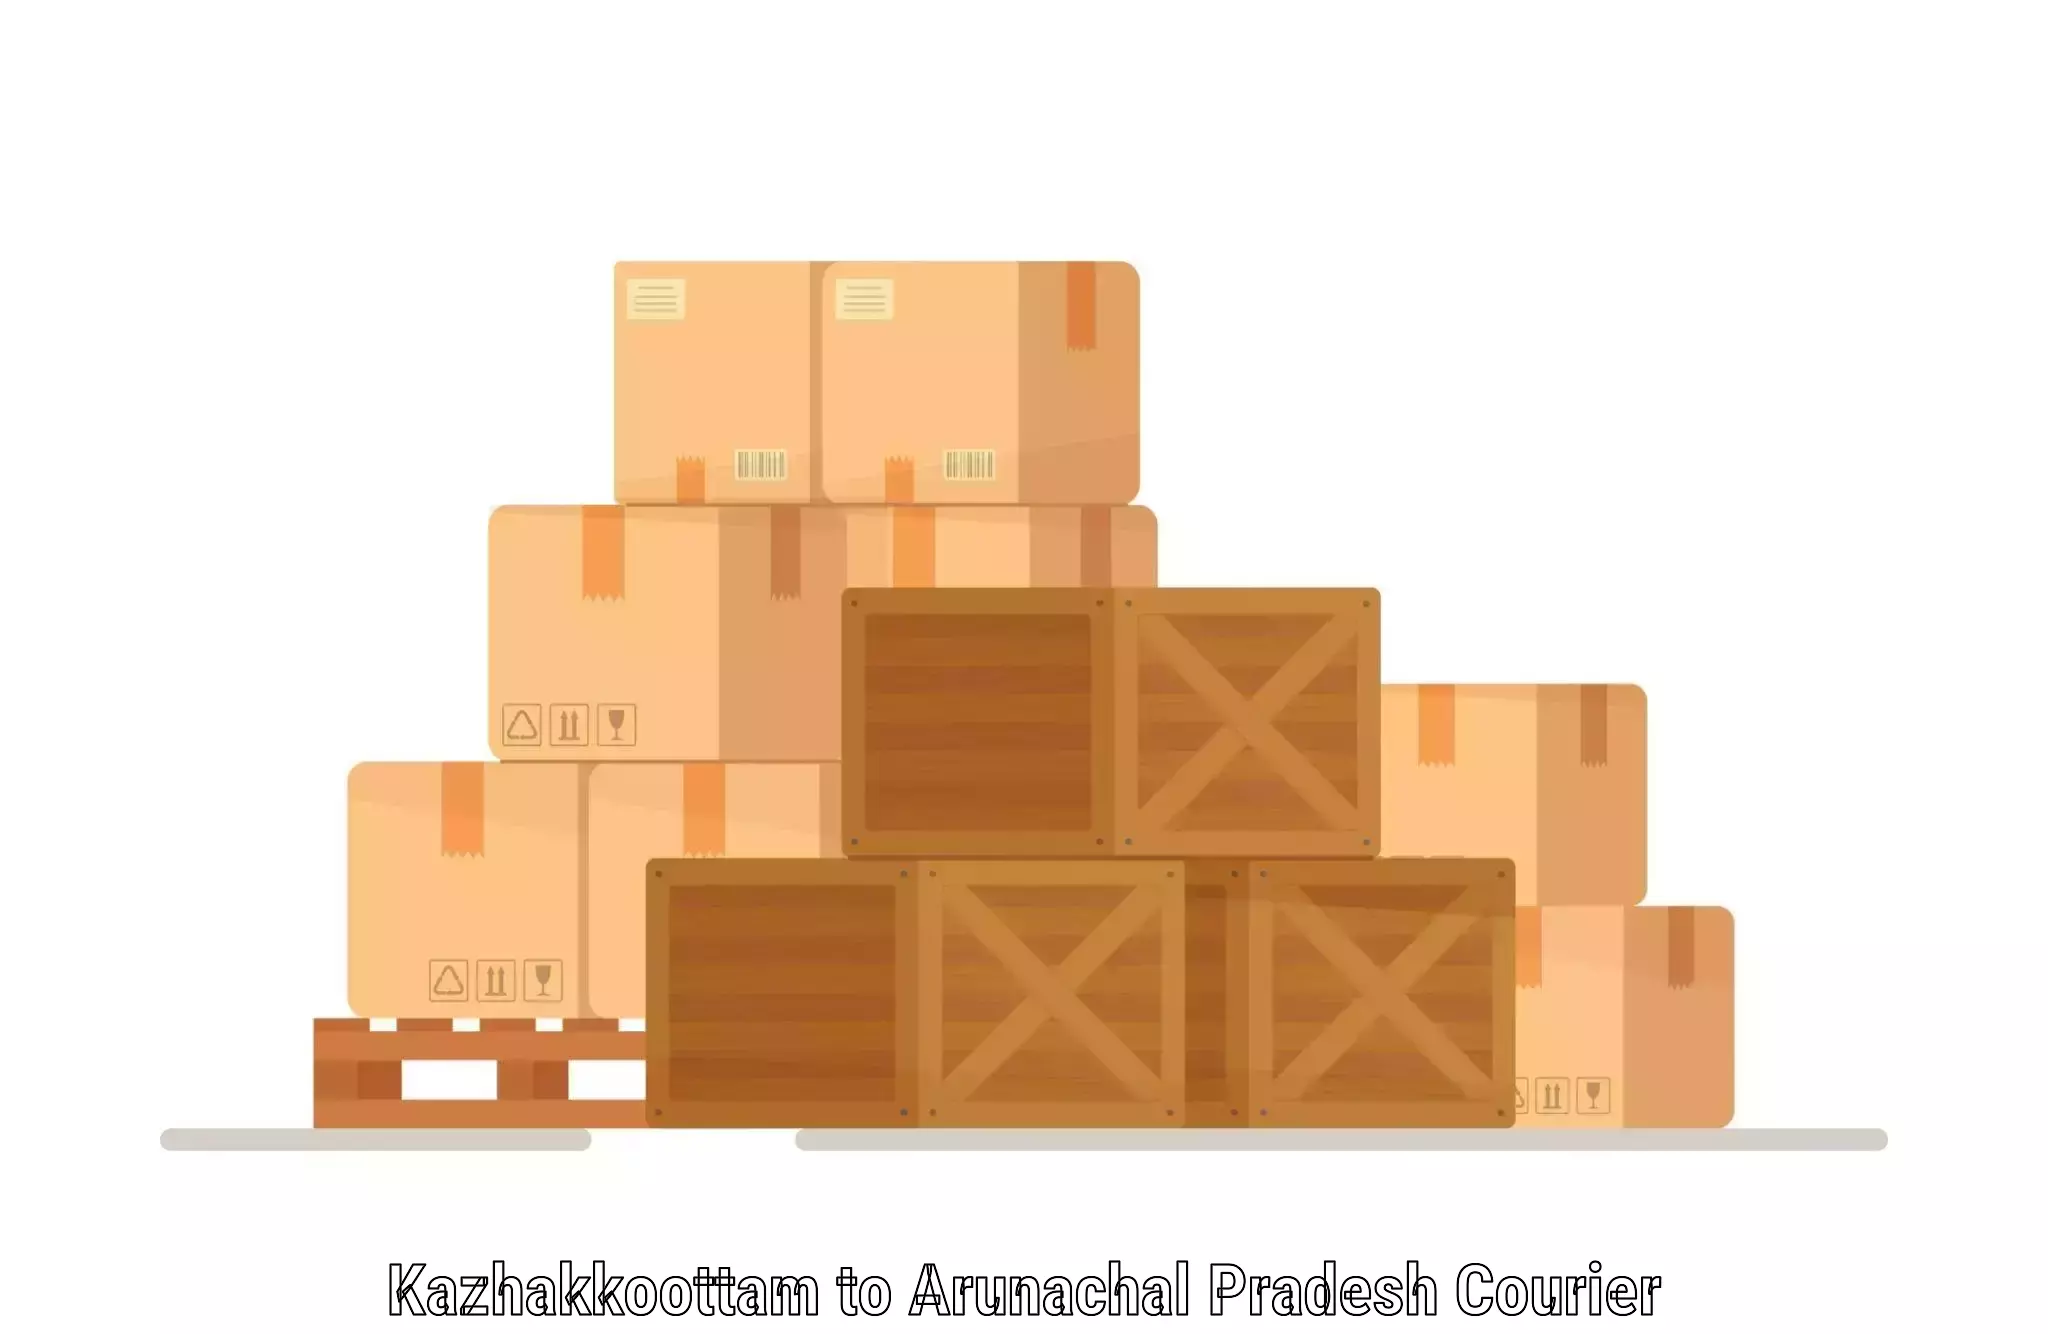 State-of-the-art courier technology in Kazhakkoottam to Arunachal Pradesh